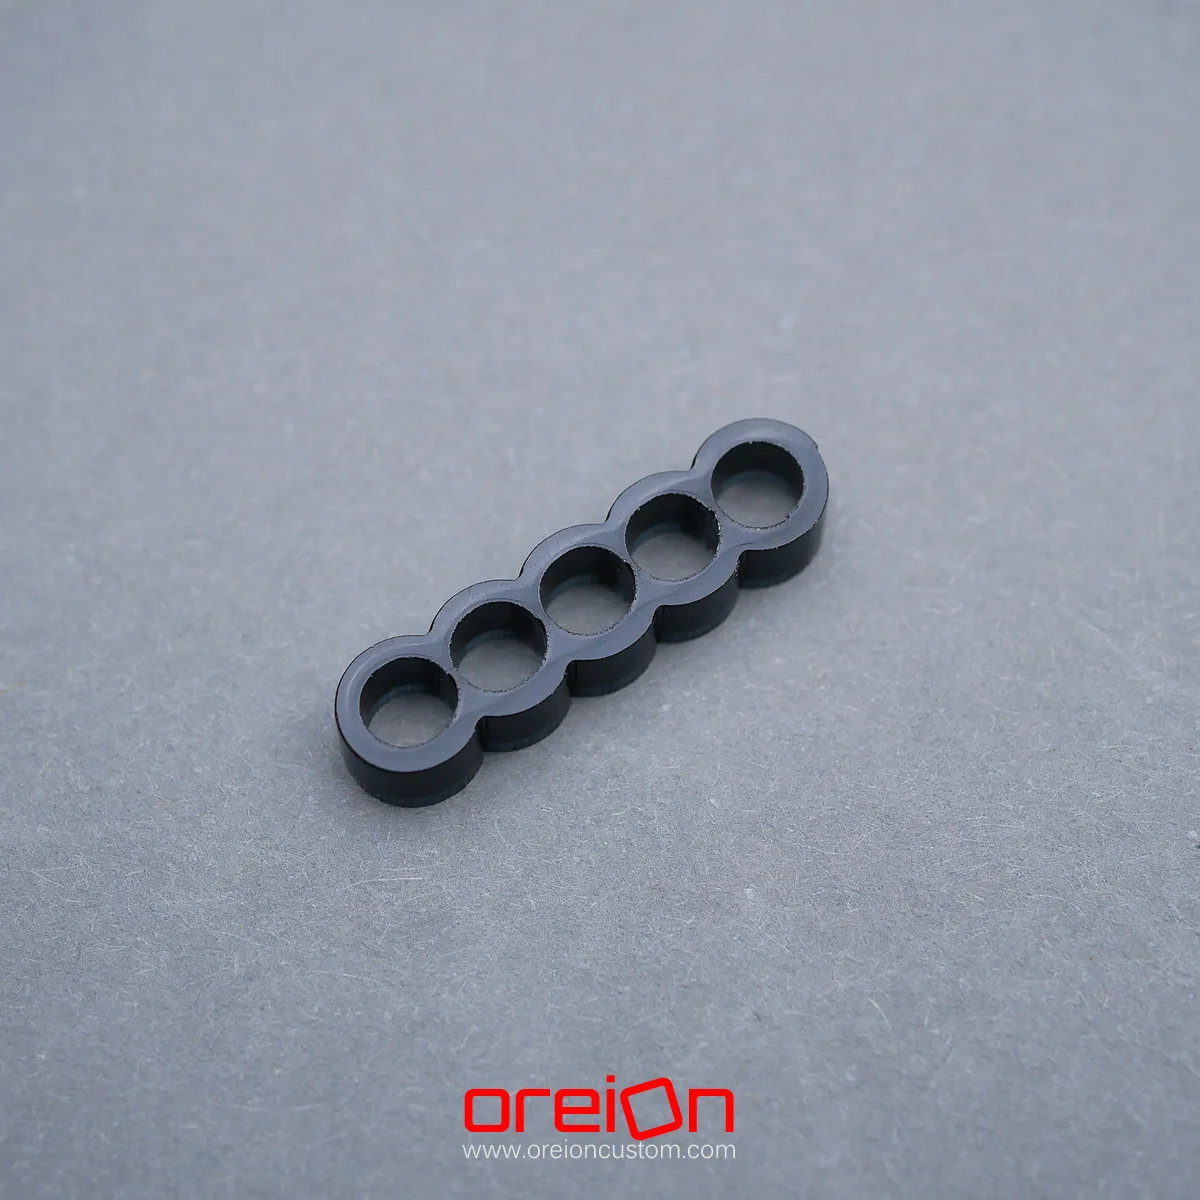 oreioncustom Cable Comb – black Closed 5 pin